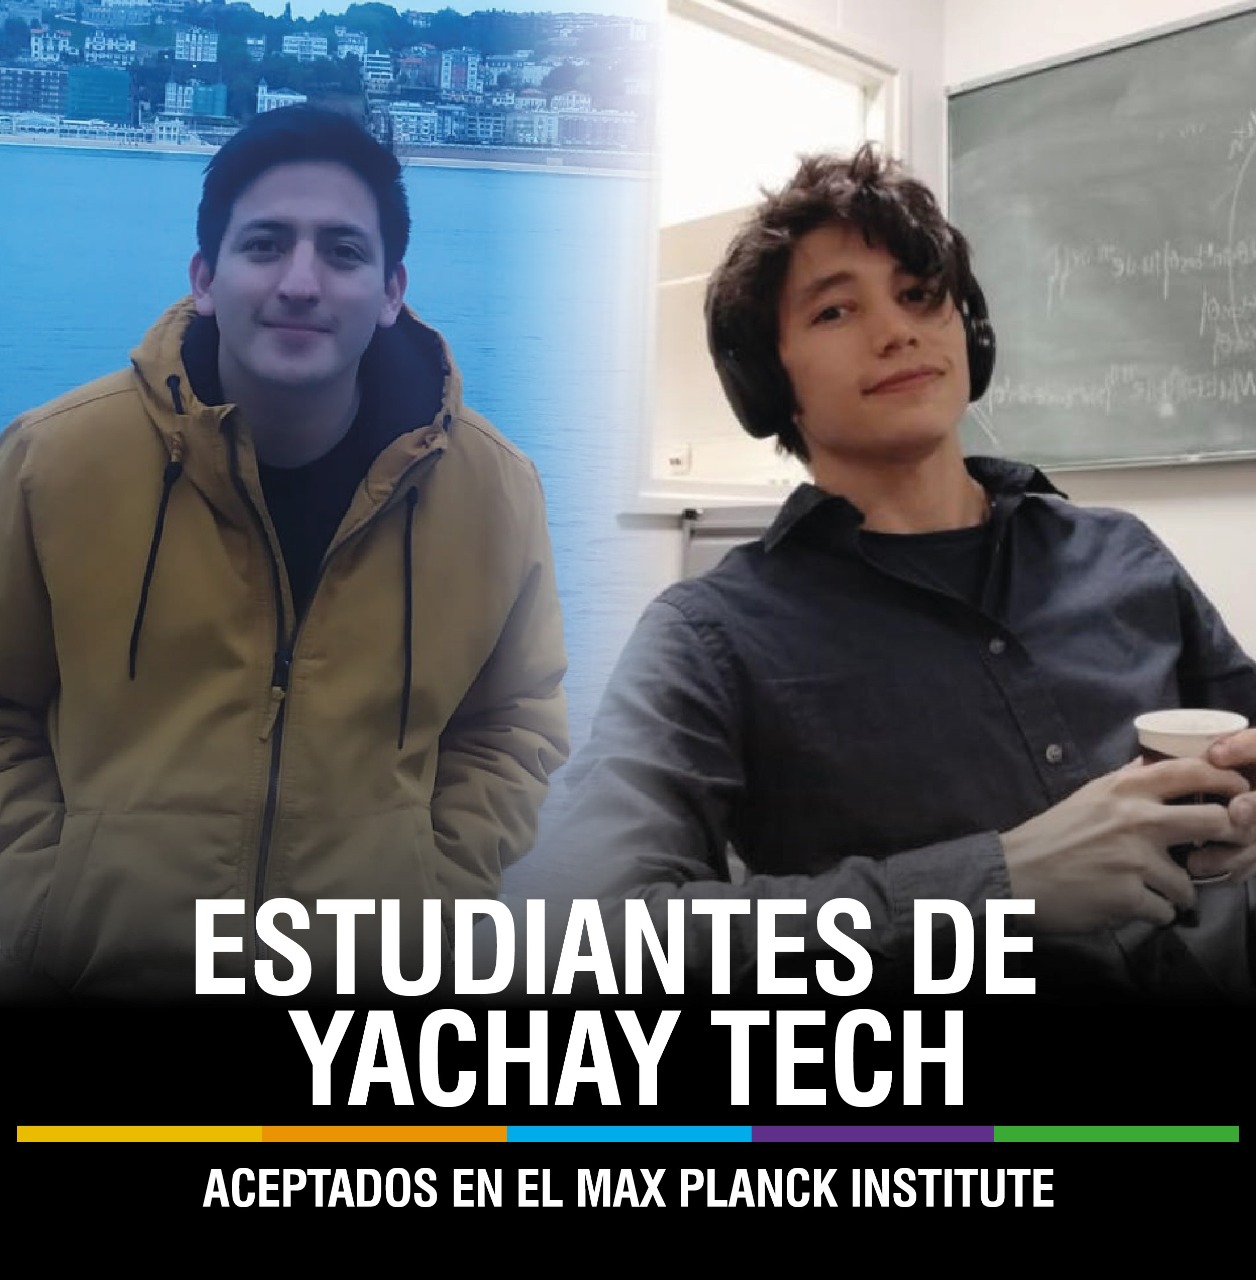 GRADUADOS DE YACHAY TECH INGRESARON AL MAX PLANCK INSTITUTE